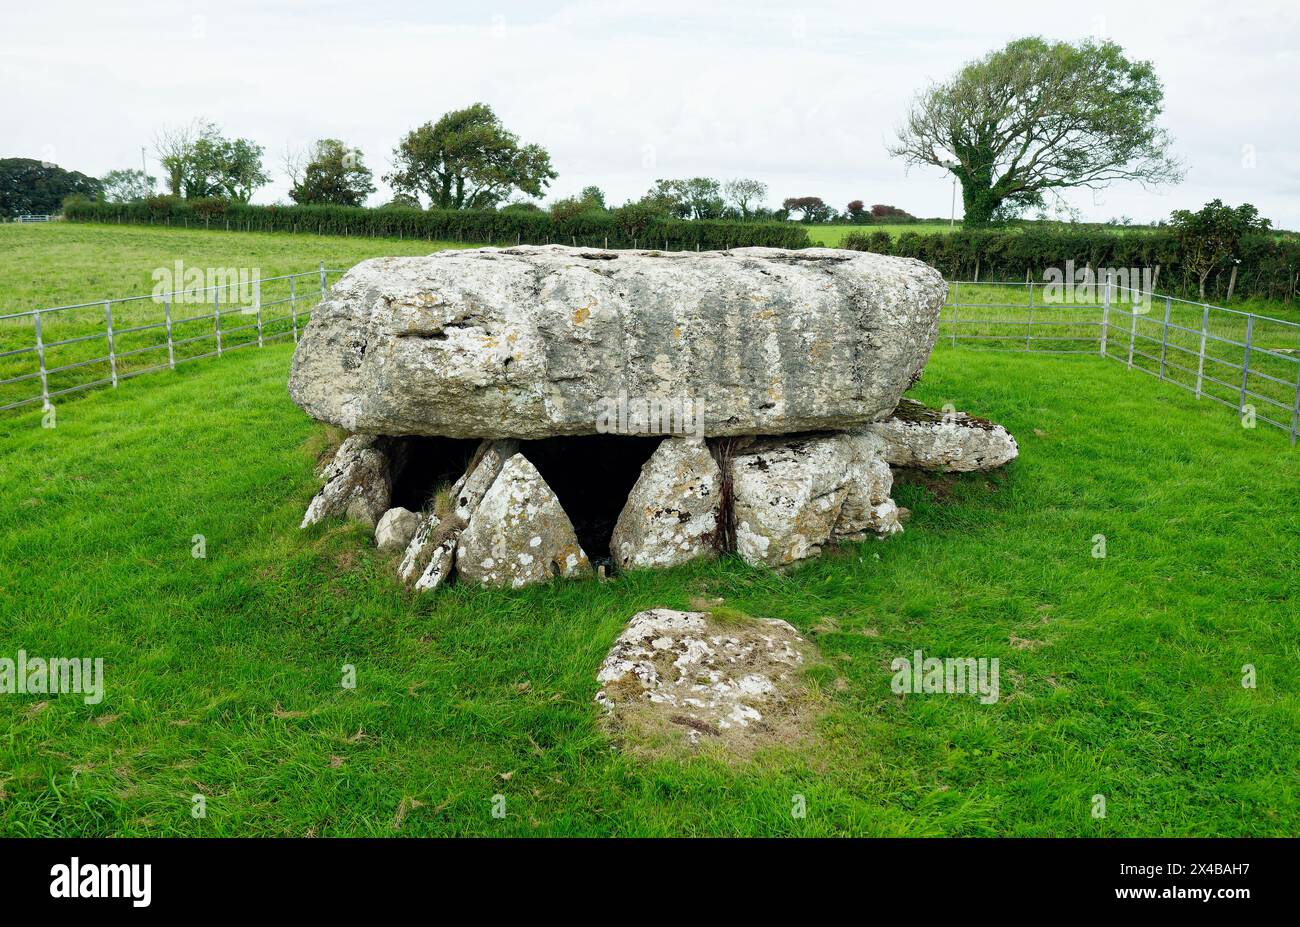 Chambre funéraire mégalithique préhistorique de Lligwy. Anglesey, pays de Galles. Néolithique tardif 2500 à 2000 av. J.-C. Calotte pierre environ 28 tonnes. Restes de 15 à 30 personnes Banque D'Images